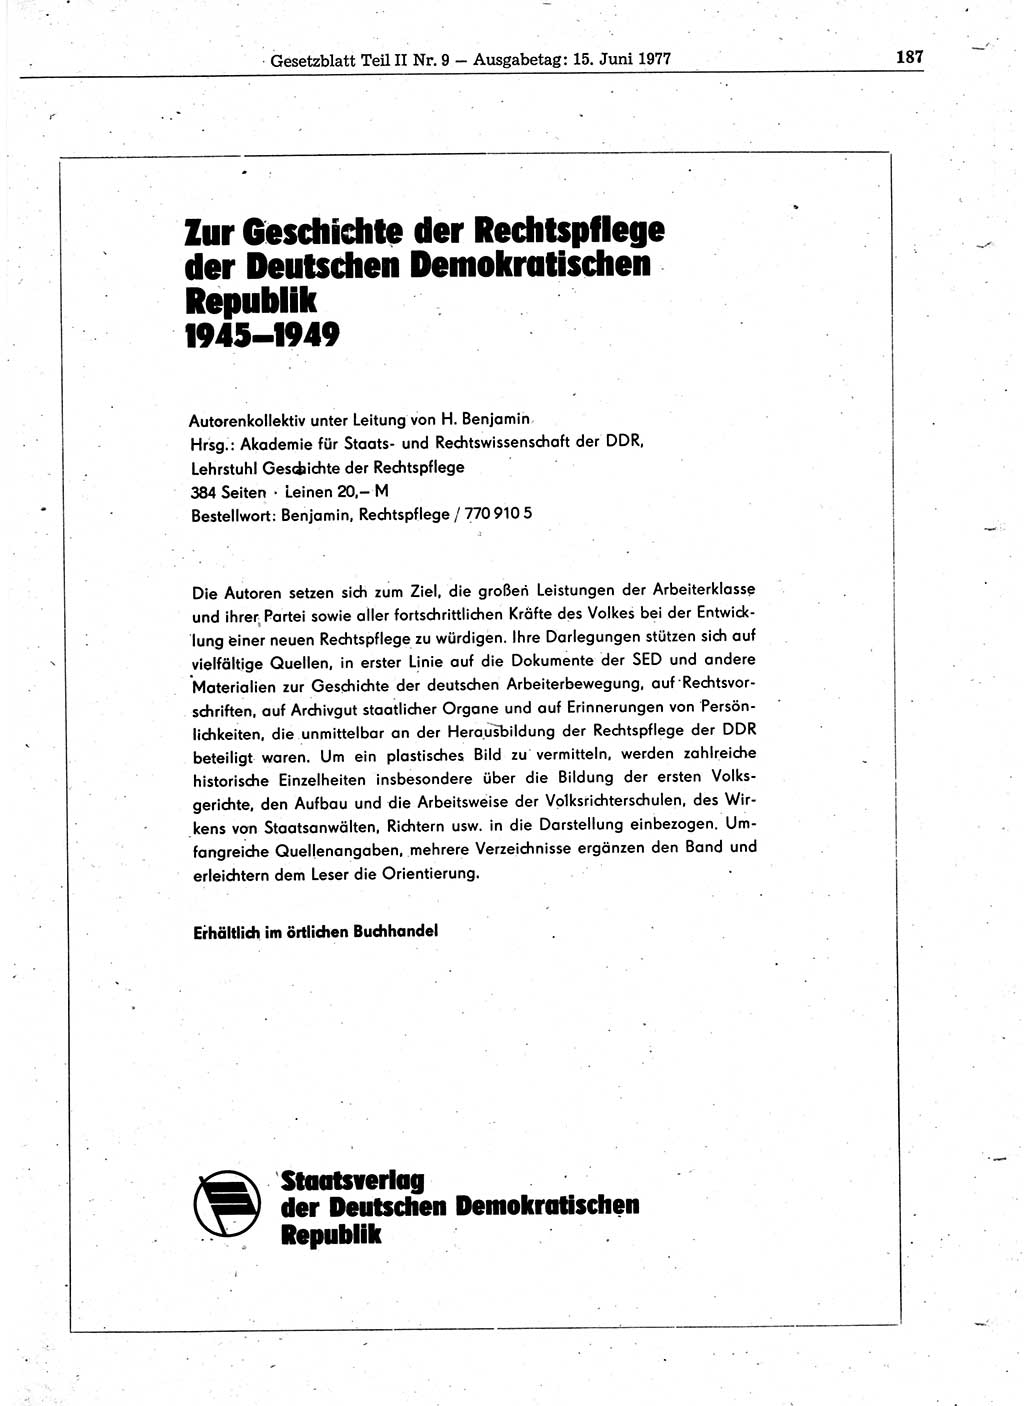 Gesetzblatt (GBl.) der Deutschen Demokratischen Republik (DDR) Teil ⅠⅠ 1977, Seite 187 (GBl. DDR ⅠⅠ 1977, S. 187)